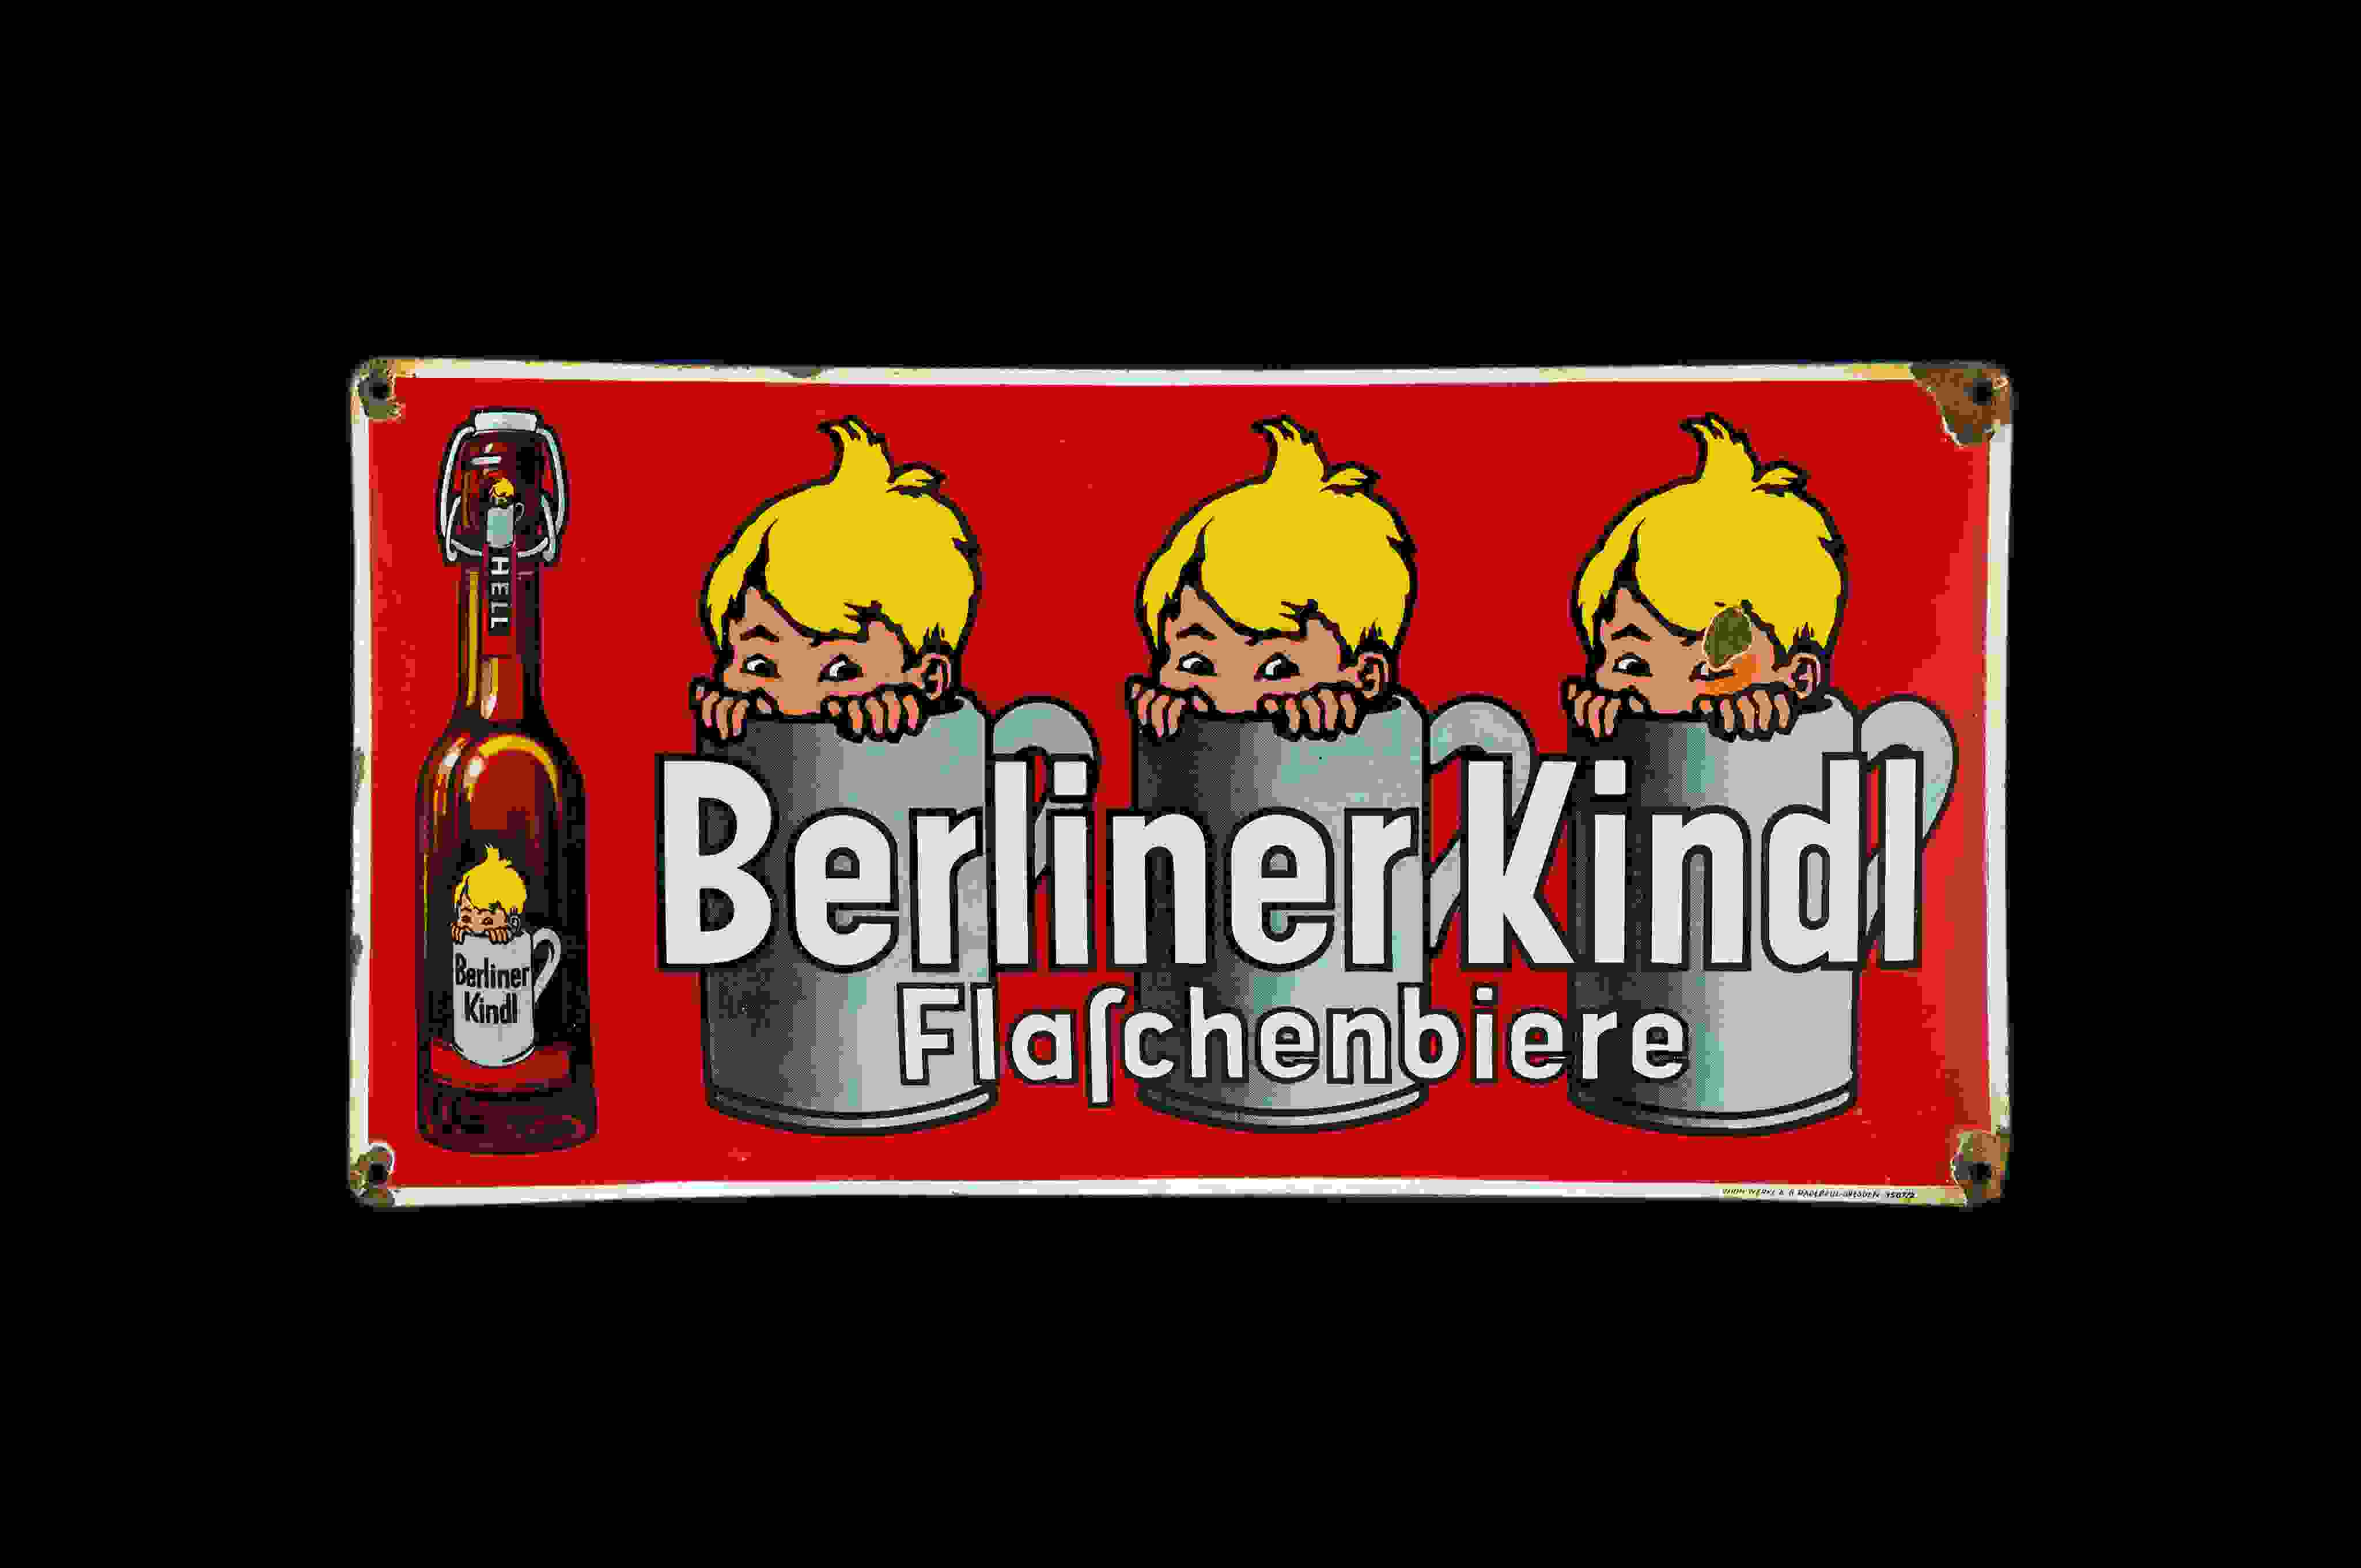 Berliner Kindl 